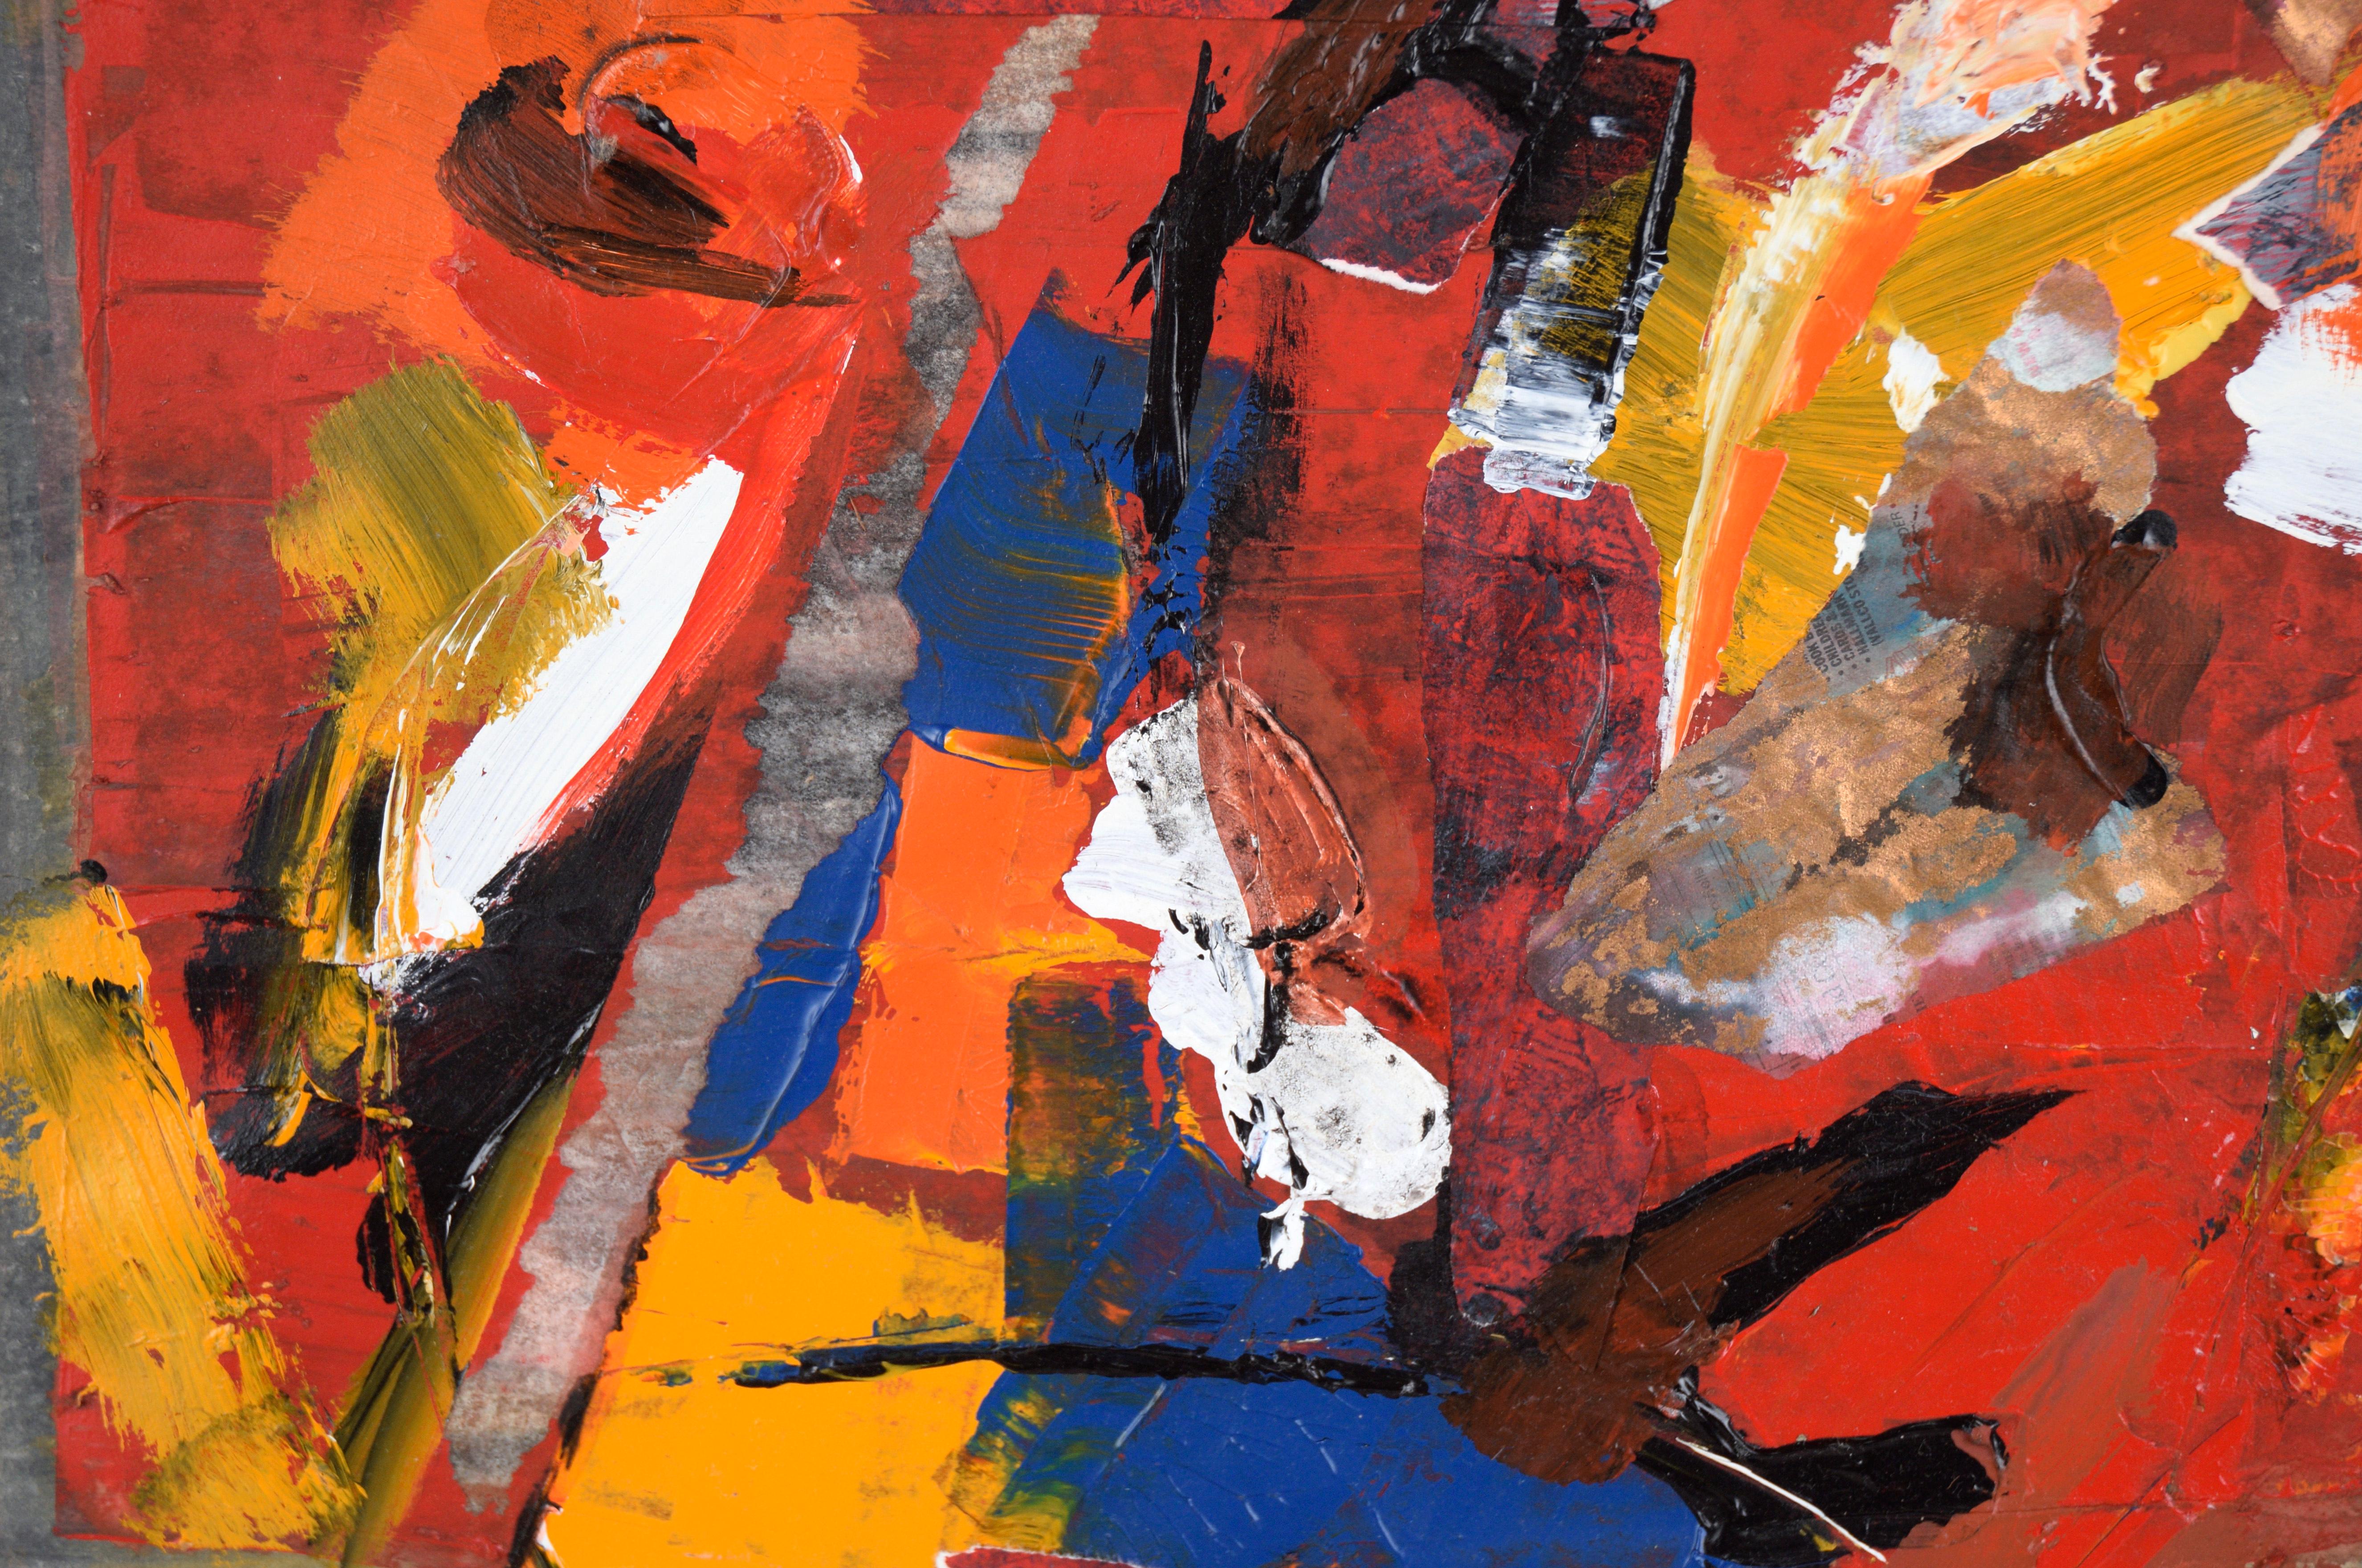 Abstrakt-expressionistische Collage aus Acryl auf Papier

Helle, gesättigte abstrakte Malerei  mit einer Collage des in Kalifornien lebenden Künstlers Ricardo de Silva (Amerikaner/Brasilien, 20. Jh.). Kräftiges Rot, Gelb, Orange und Blau bilden eine